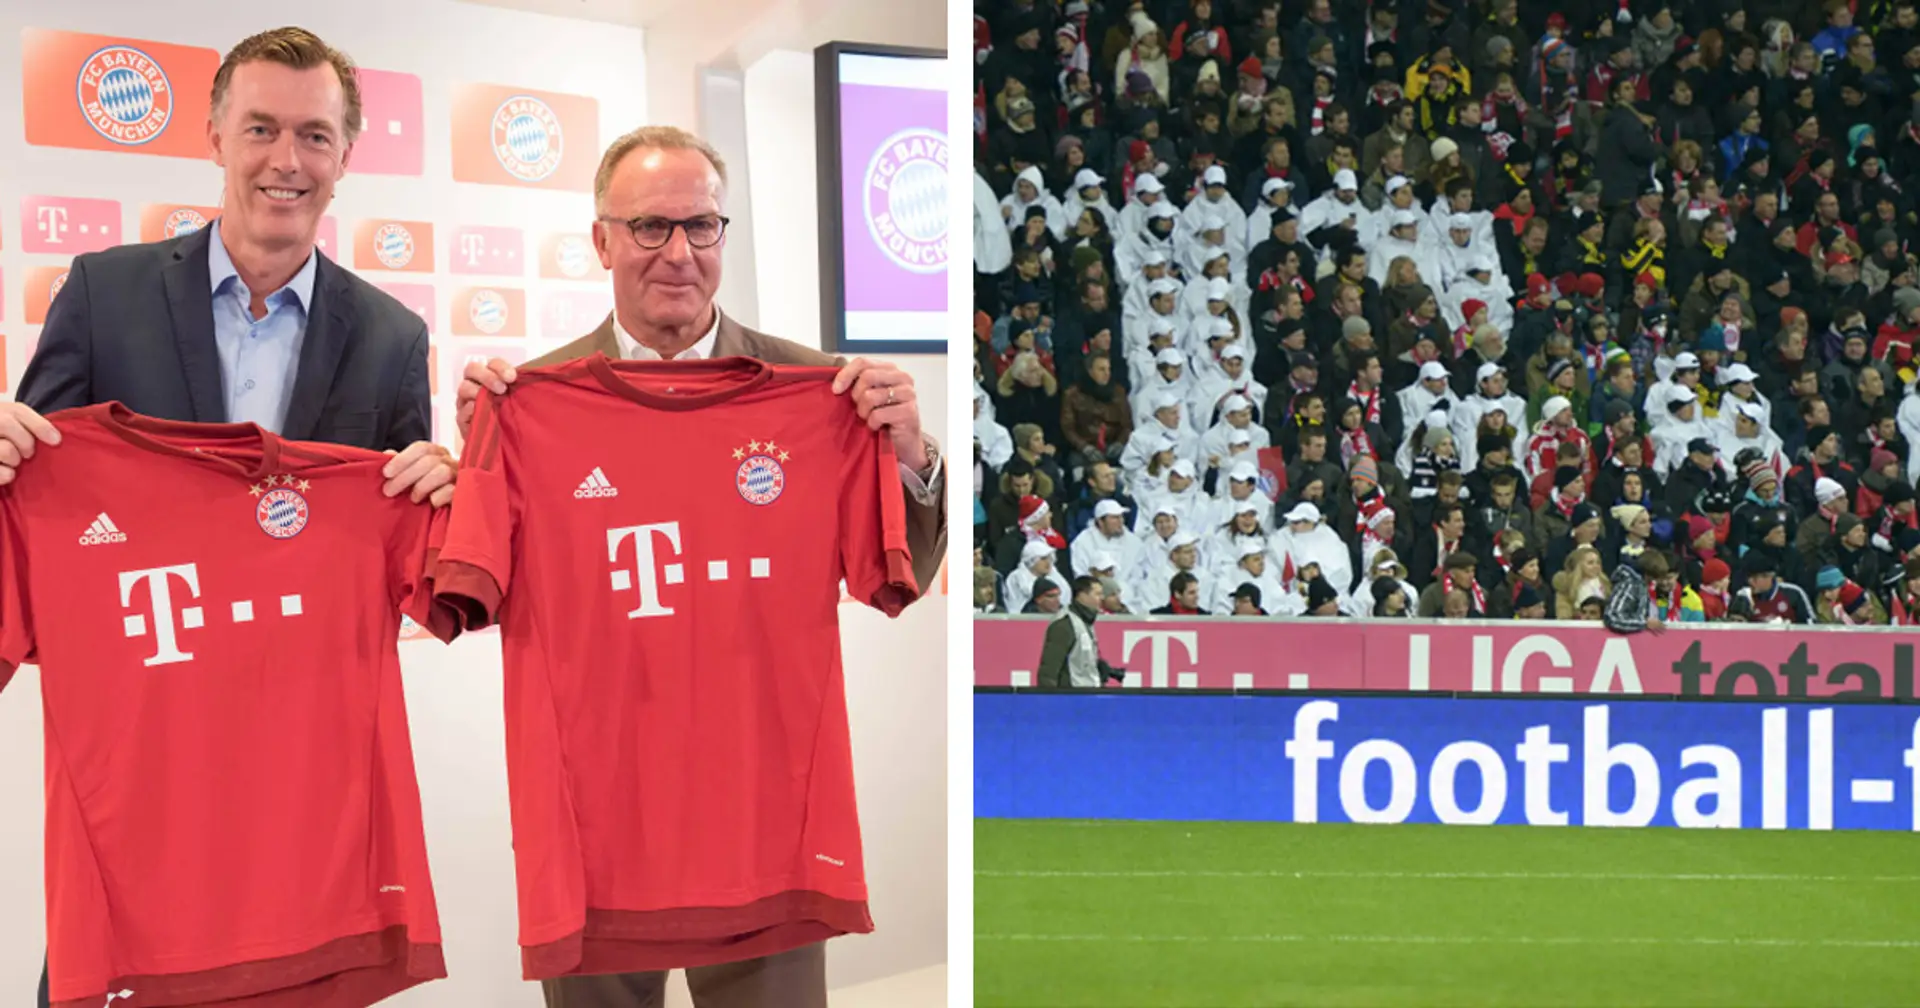 Sogar BVB kassiert mehr: Bayern steht vor neuem Sponsor-Deal - jetzt verdient München 35 Mio. Euro